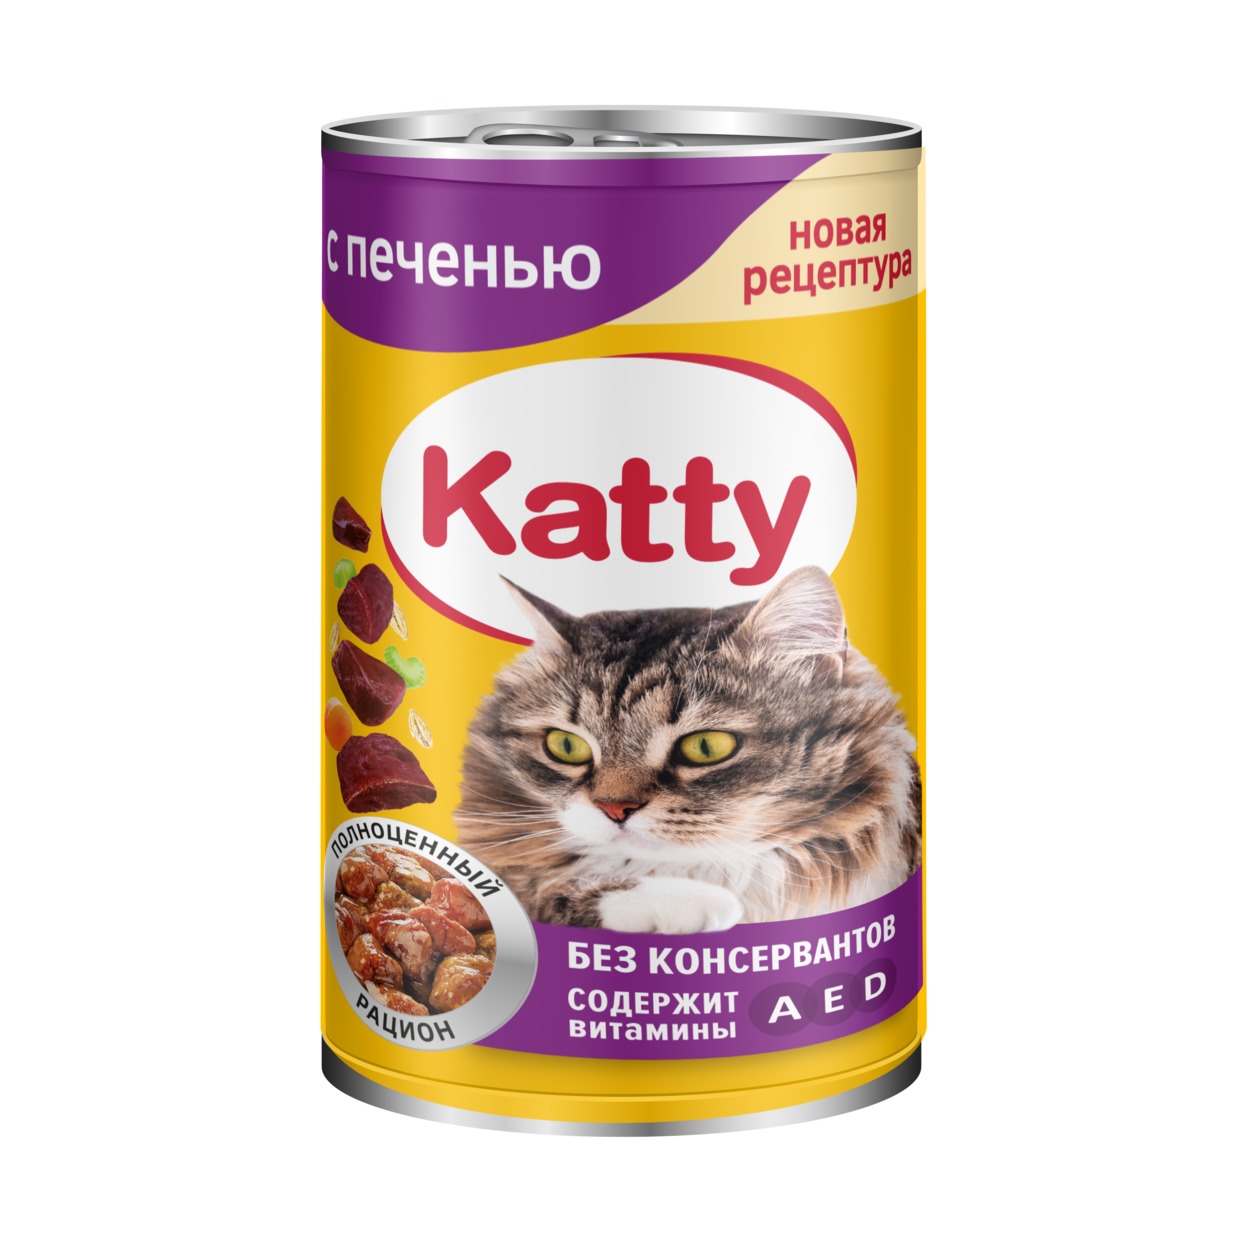 Katty Корм консервированный полнорационный для кошек с печенью в соусе, ж/б 415 гр.